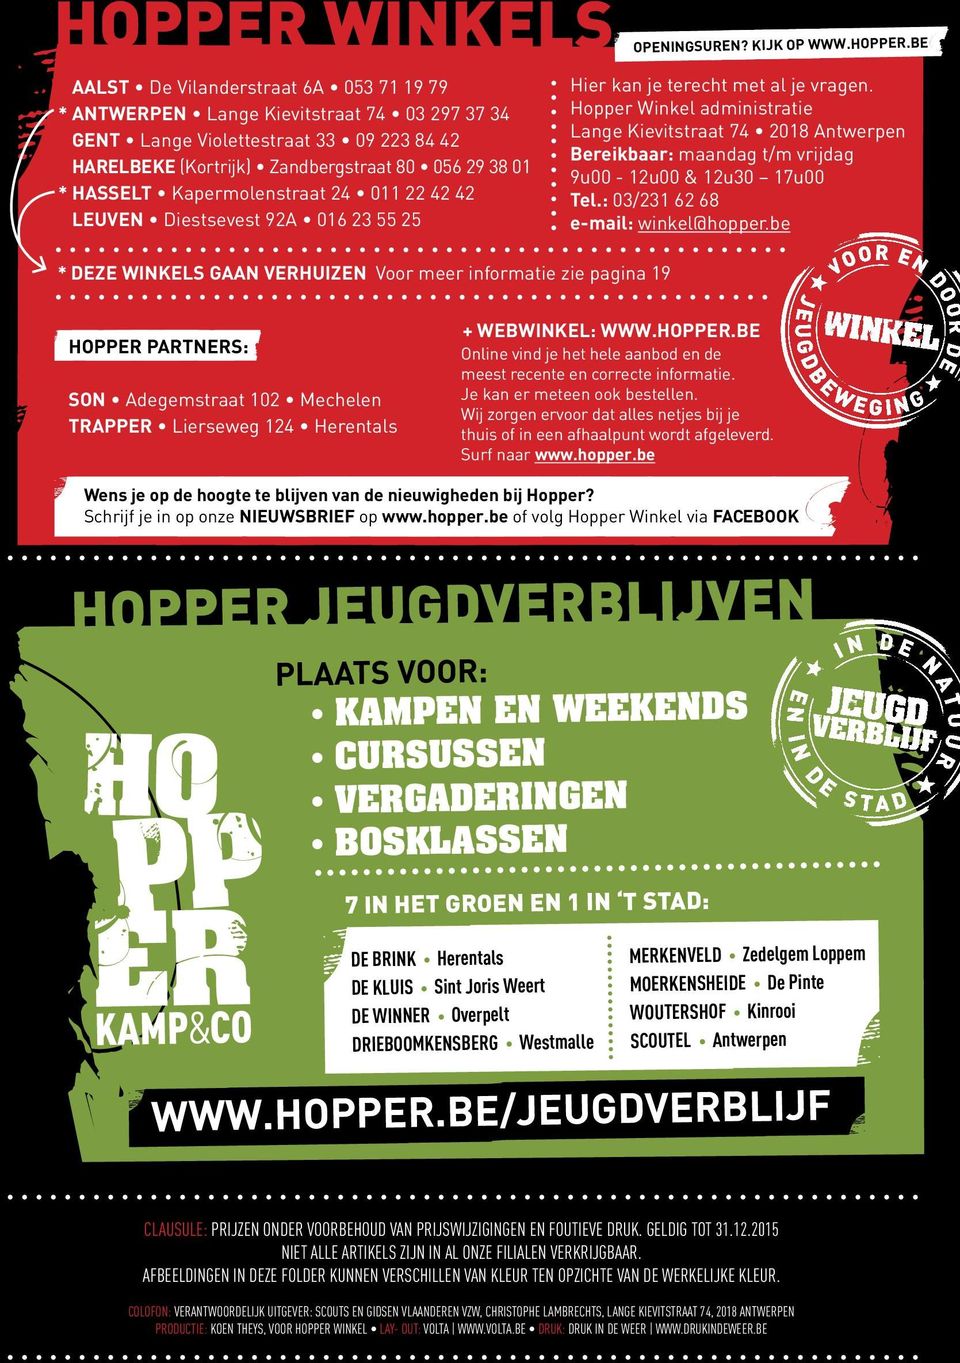 BE Hier kan je terecht met al je vragen. Hopper Winkel administratie Lange Kievitstraat 74 2018 Antwerpen Bereikbaar: maandag t/m vrijdag 9u00-12u00 & 12u30 17u00 Tel.